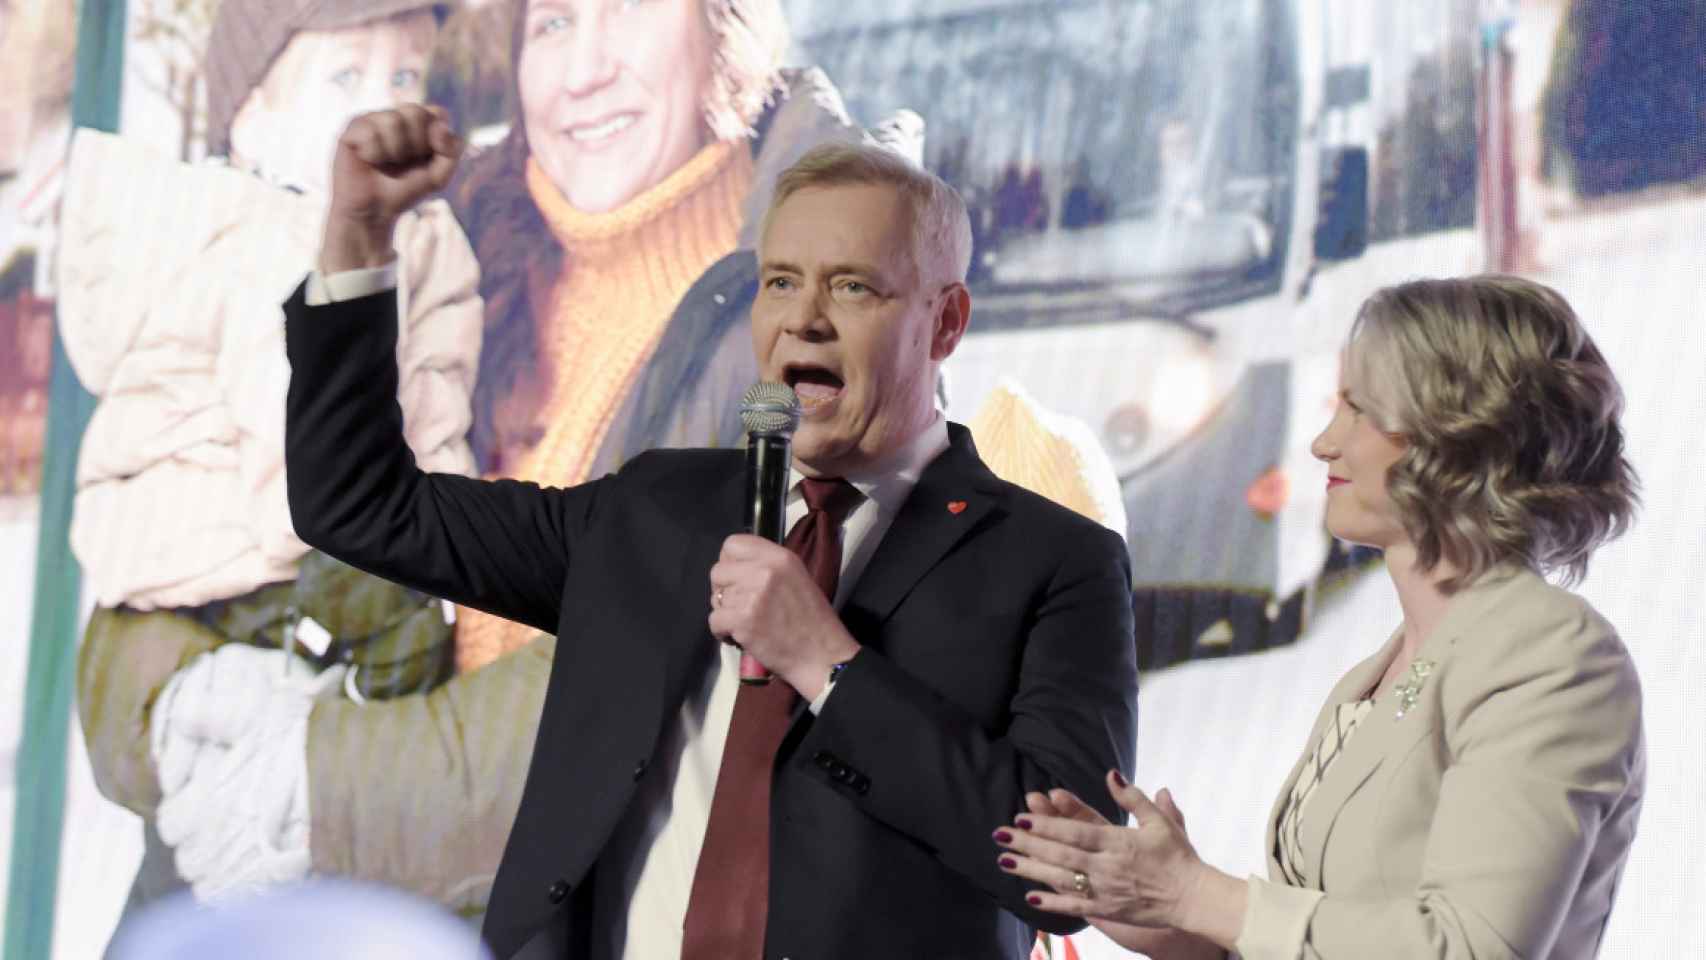 El presidente del Partido socialdemócrata finlandés Antti Rinne y su esposa asisten a la fiesta electoral en Helsinki.